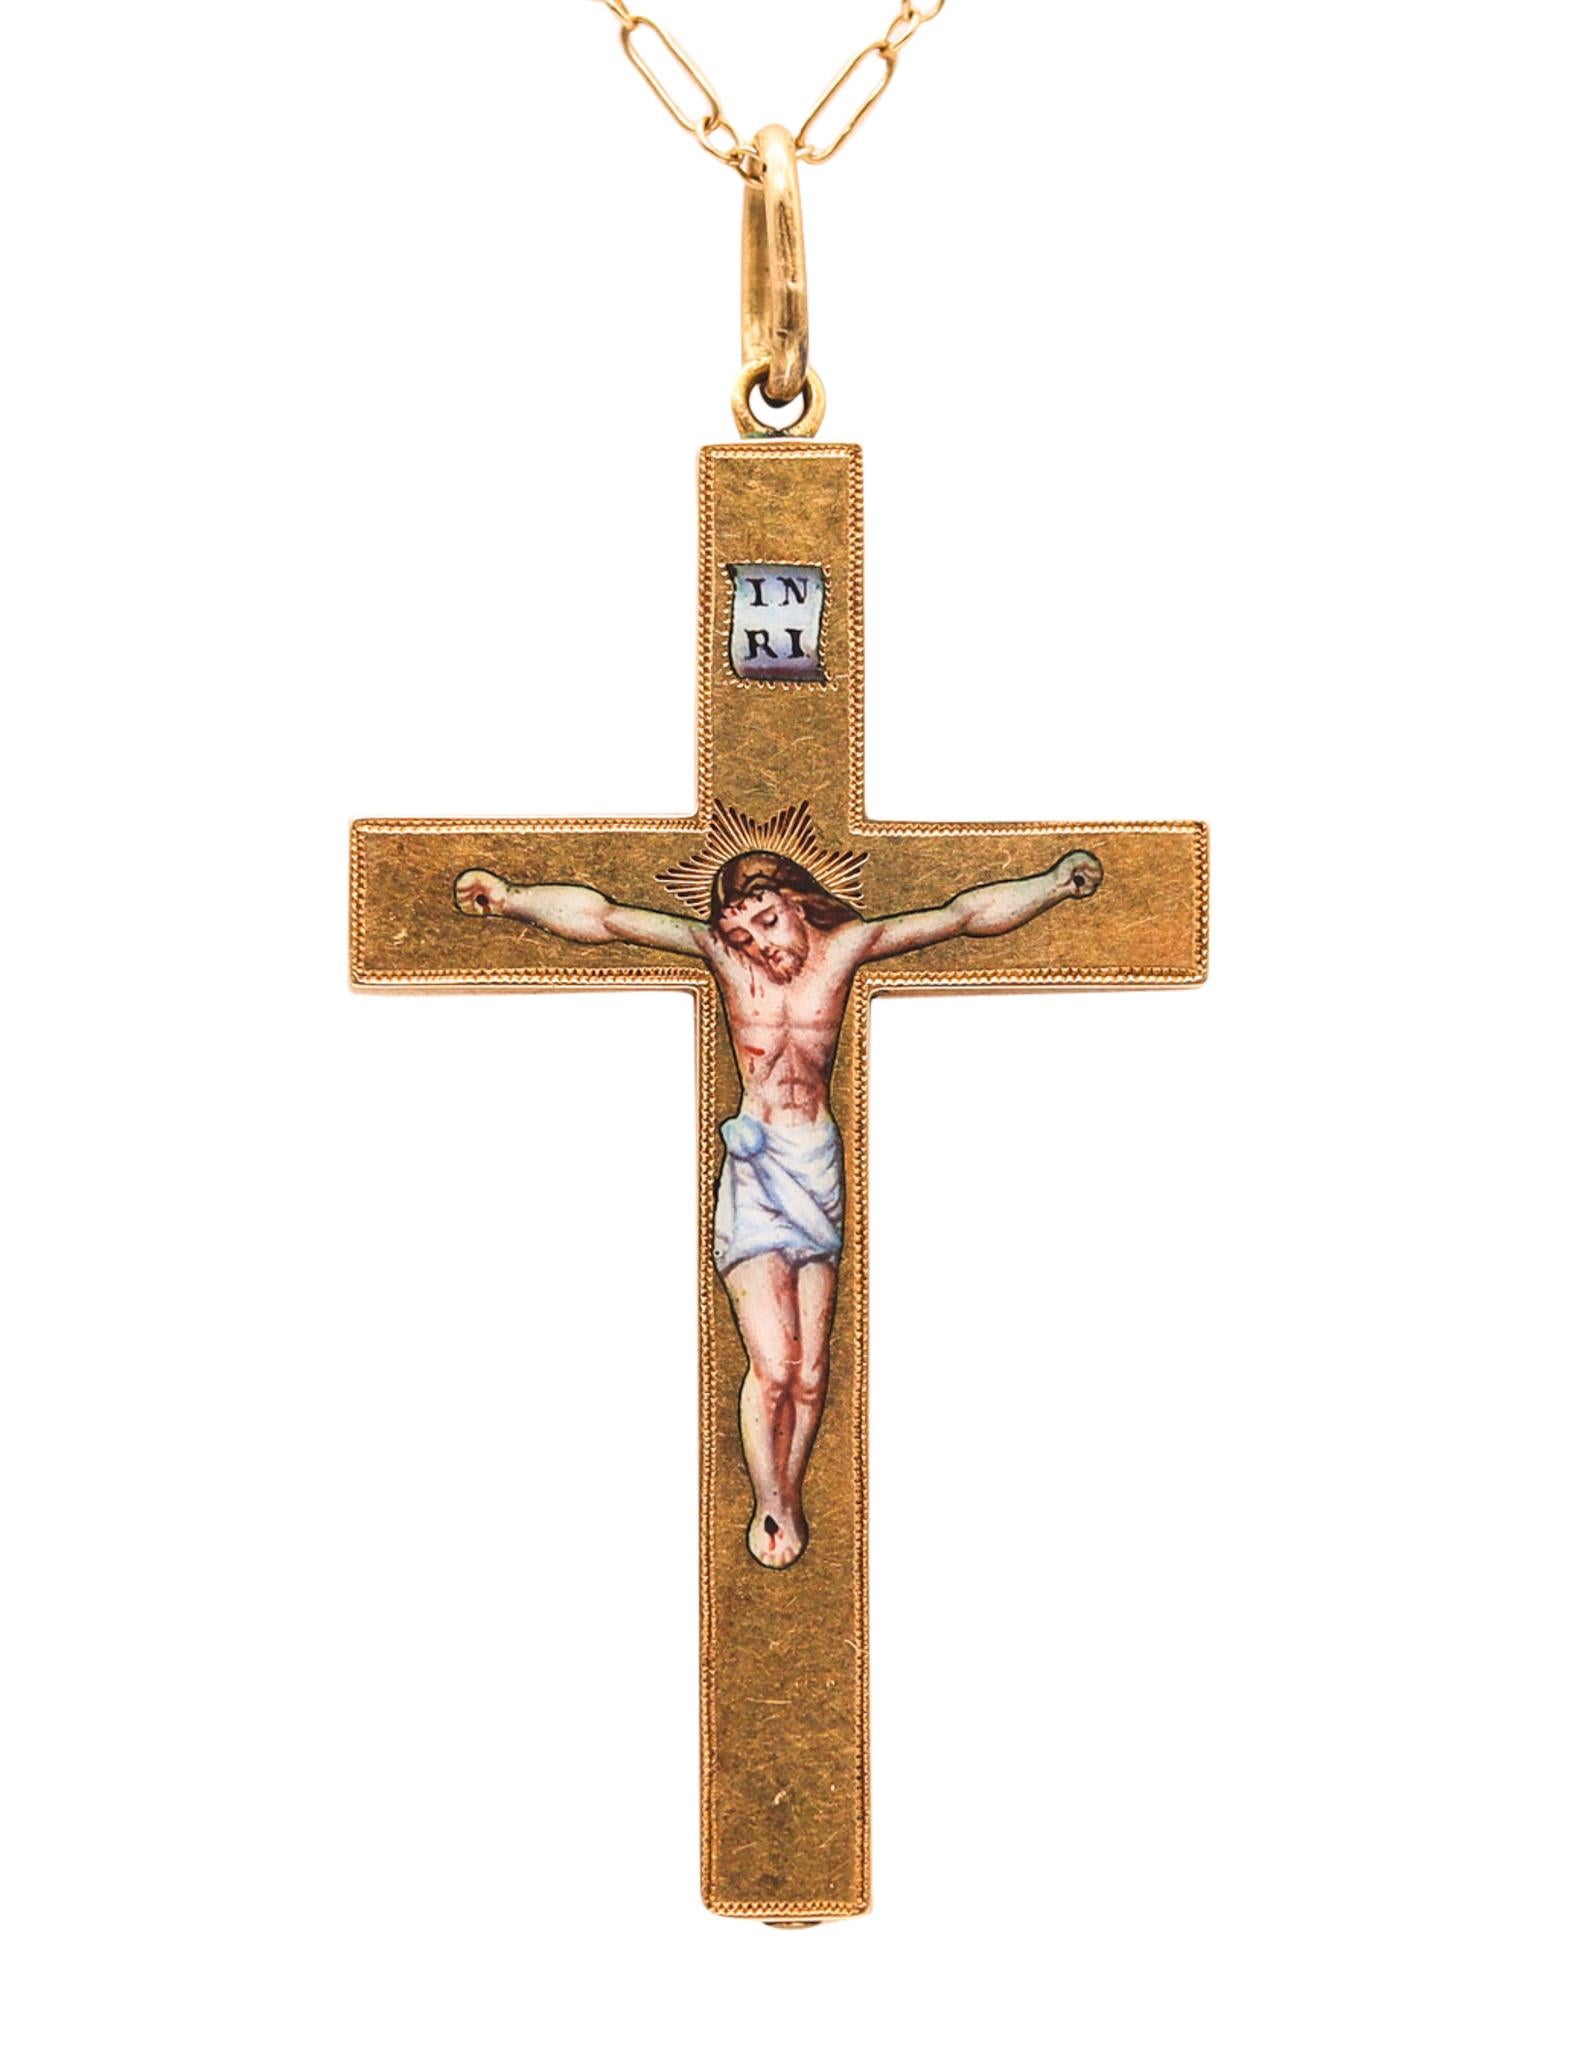 Emailliertes polychromes Kreuz aus massivem 18 Karat Gelbgold im byzantinischen Revival-Stil von 1850